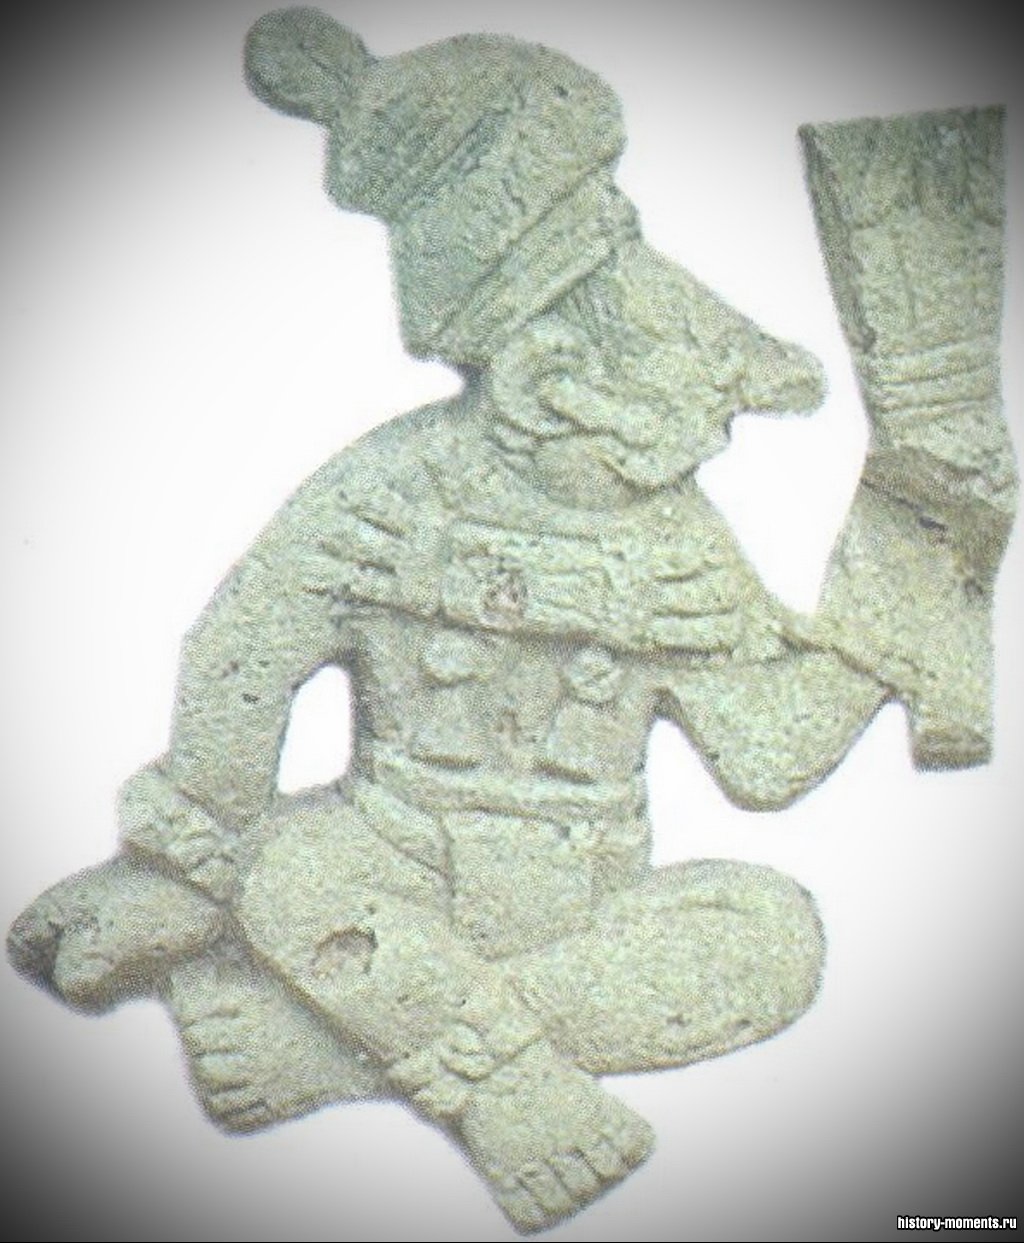 Статуэтки майя чаще всего изображали богов, но иногда отражали и события повседневной жизни. За пределами городов люди чаще всего занимались земледелием.